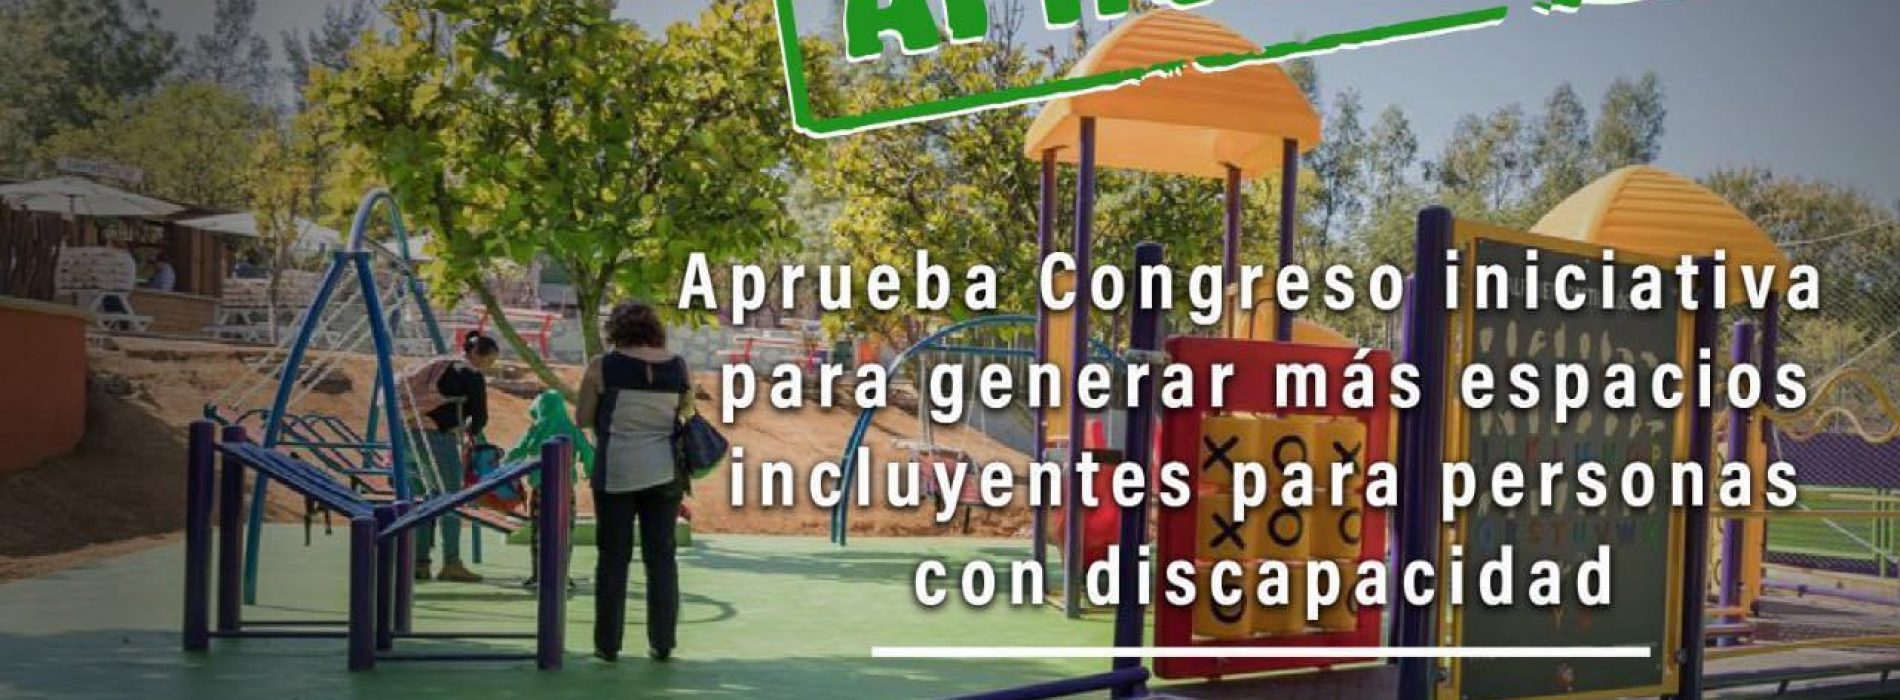 Aprueba Congreso iniciativa de Aurora López Acevedo para que la planificación urbana contemple necesidades de personas con discapacidad